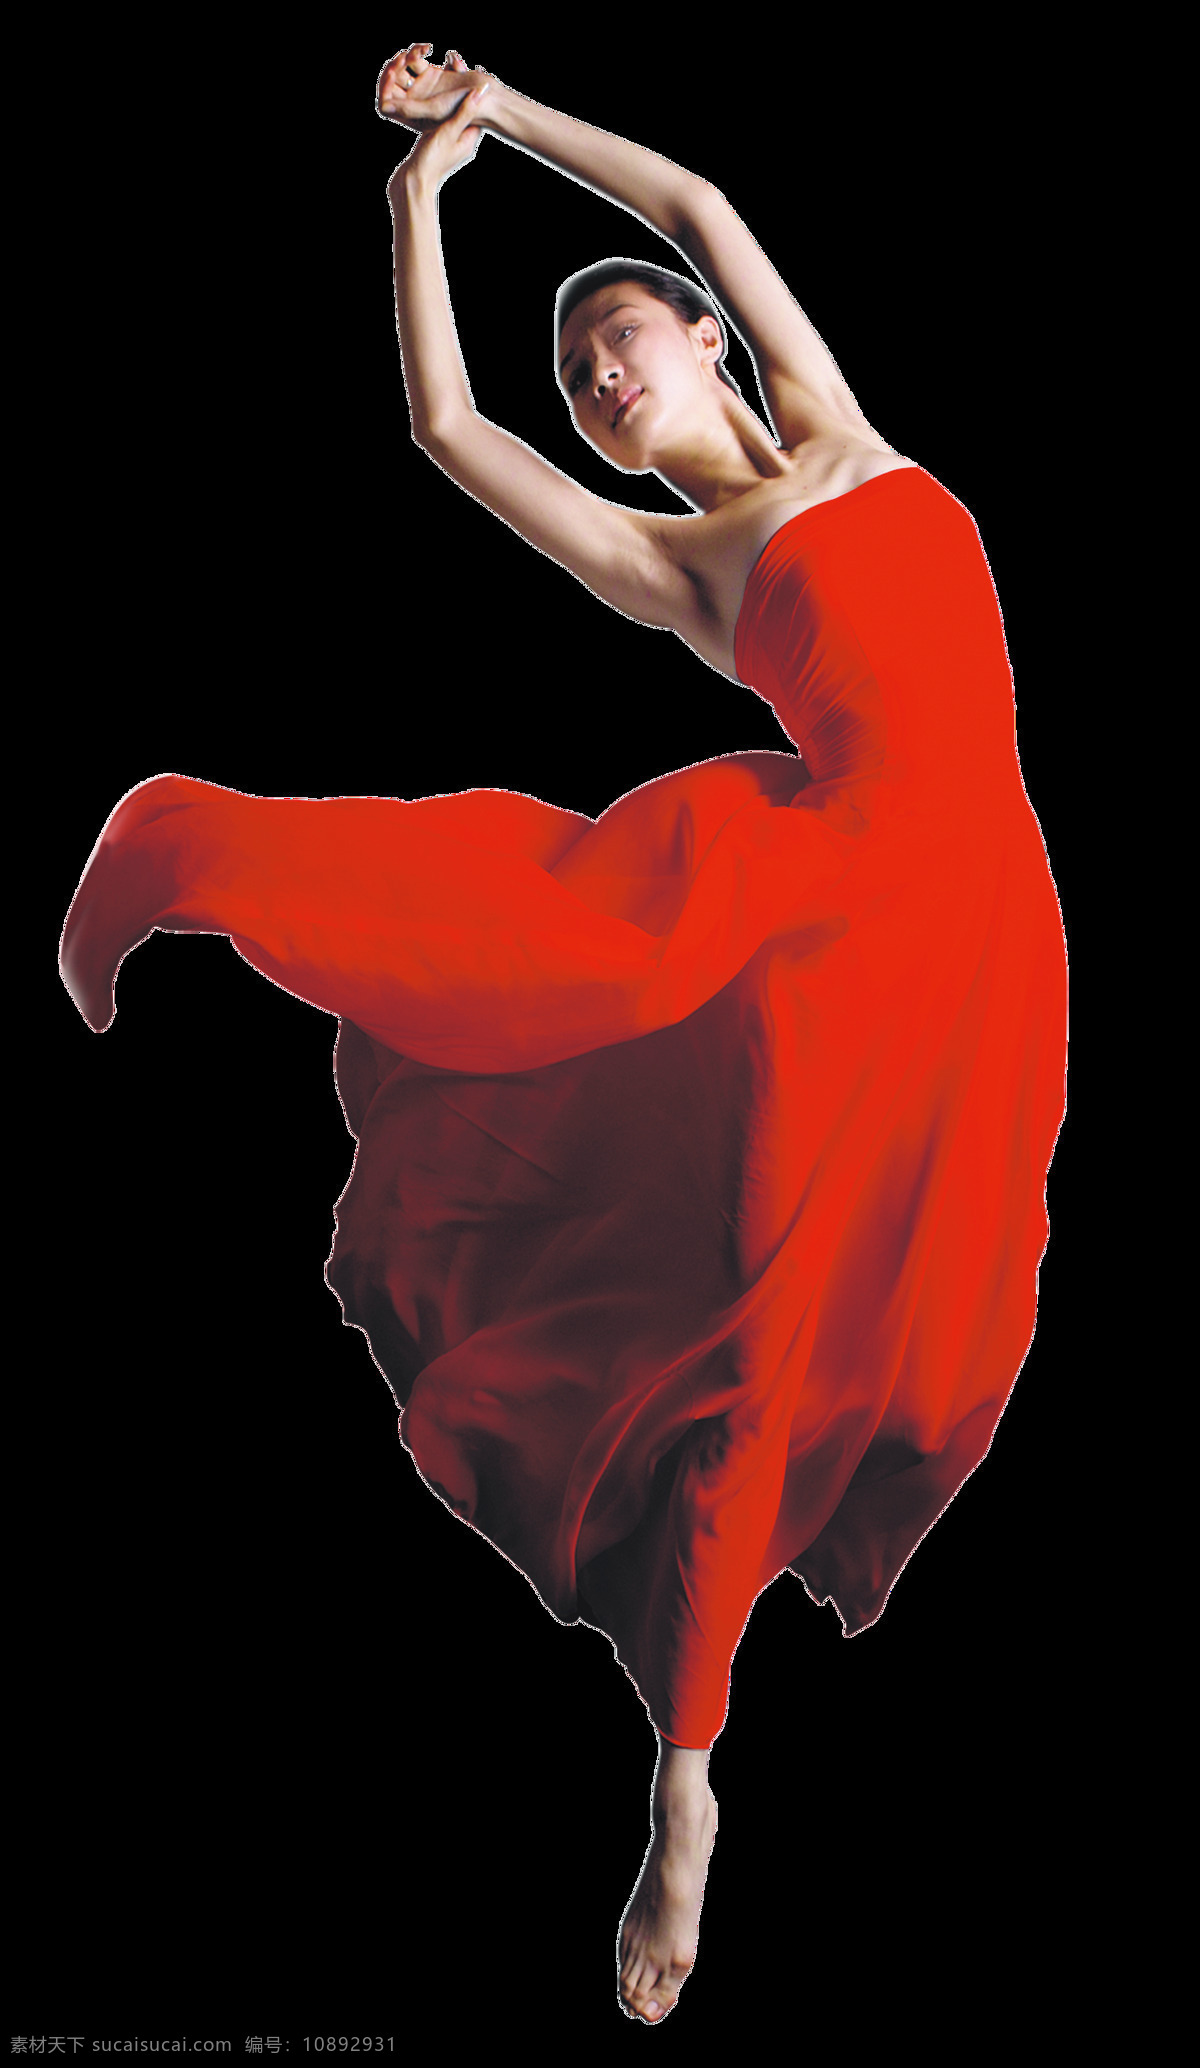 跳舞中的舞女 红衣舞女 舞蹈素材 舞台美女 跳舞的美女 女性舞者 跳舞 舞女 红裙 城市 速写 美女 舞蹈 丝带飘带 文化艺术 舞蹈音乐